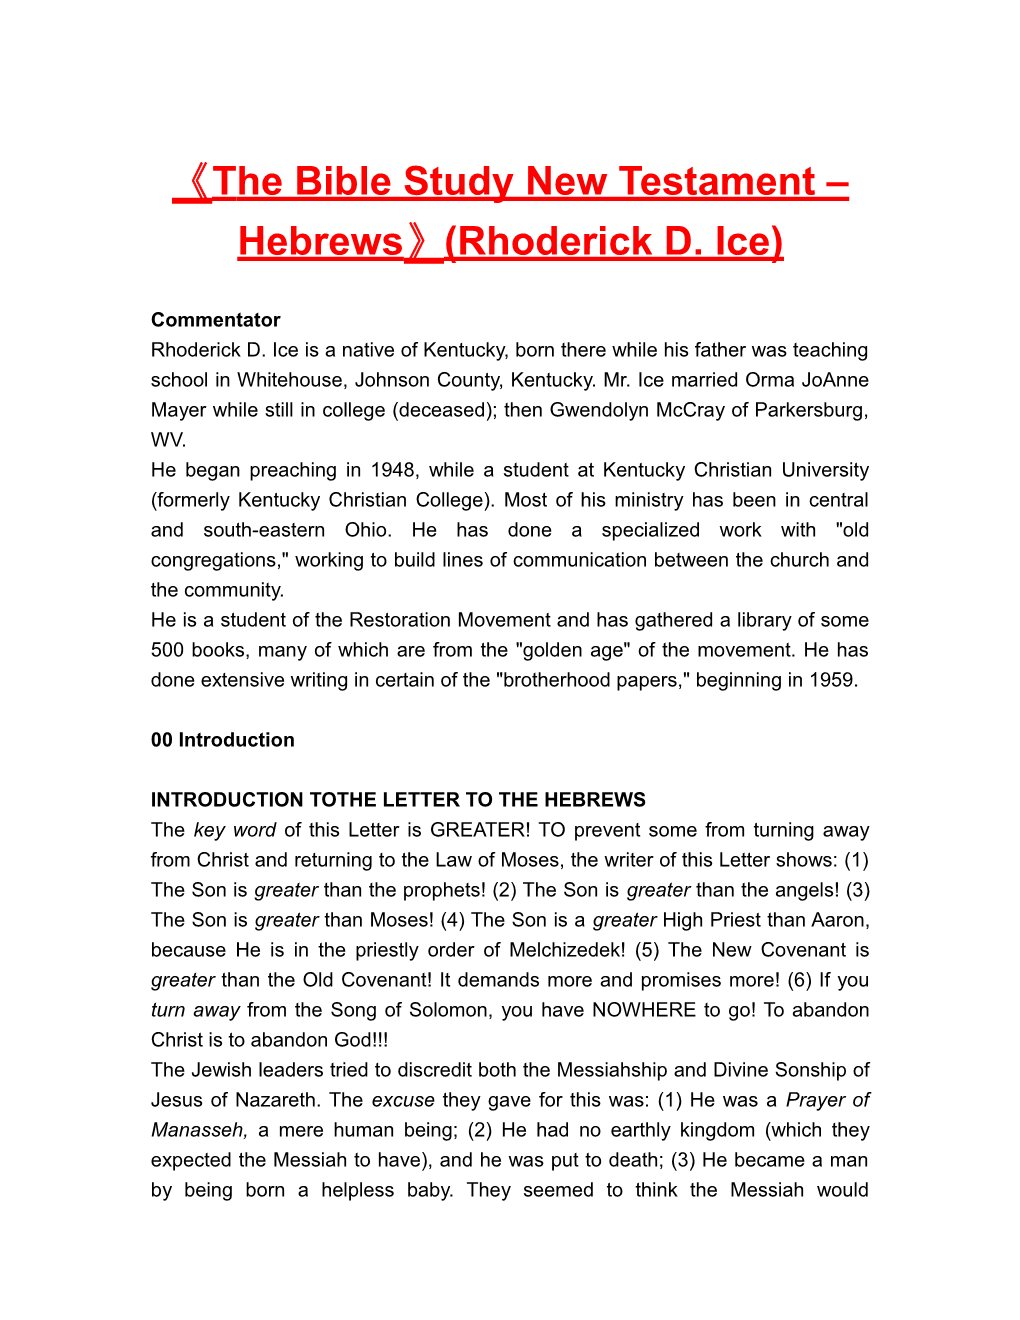 The Bible Study New Testament Hebrews (Rhoderick D. Ice)